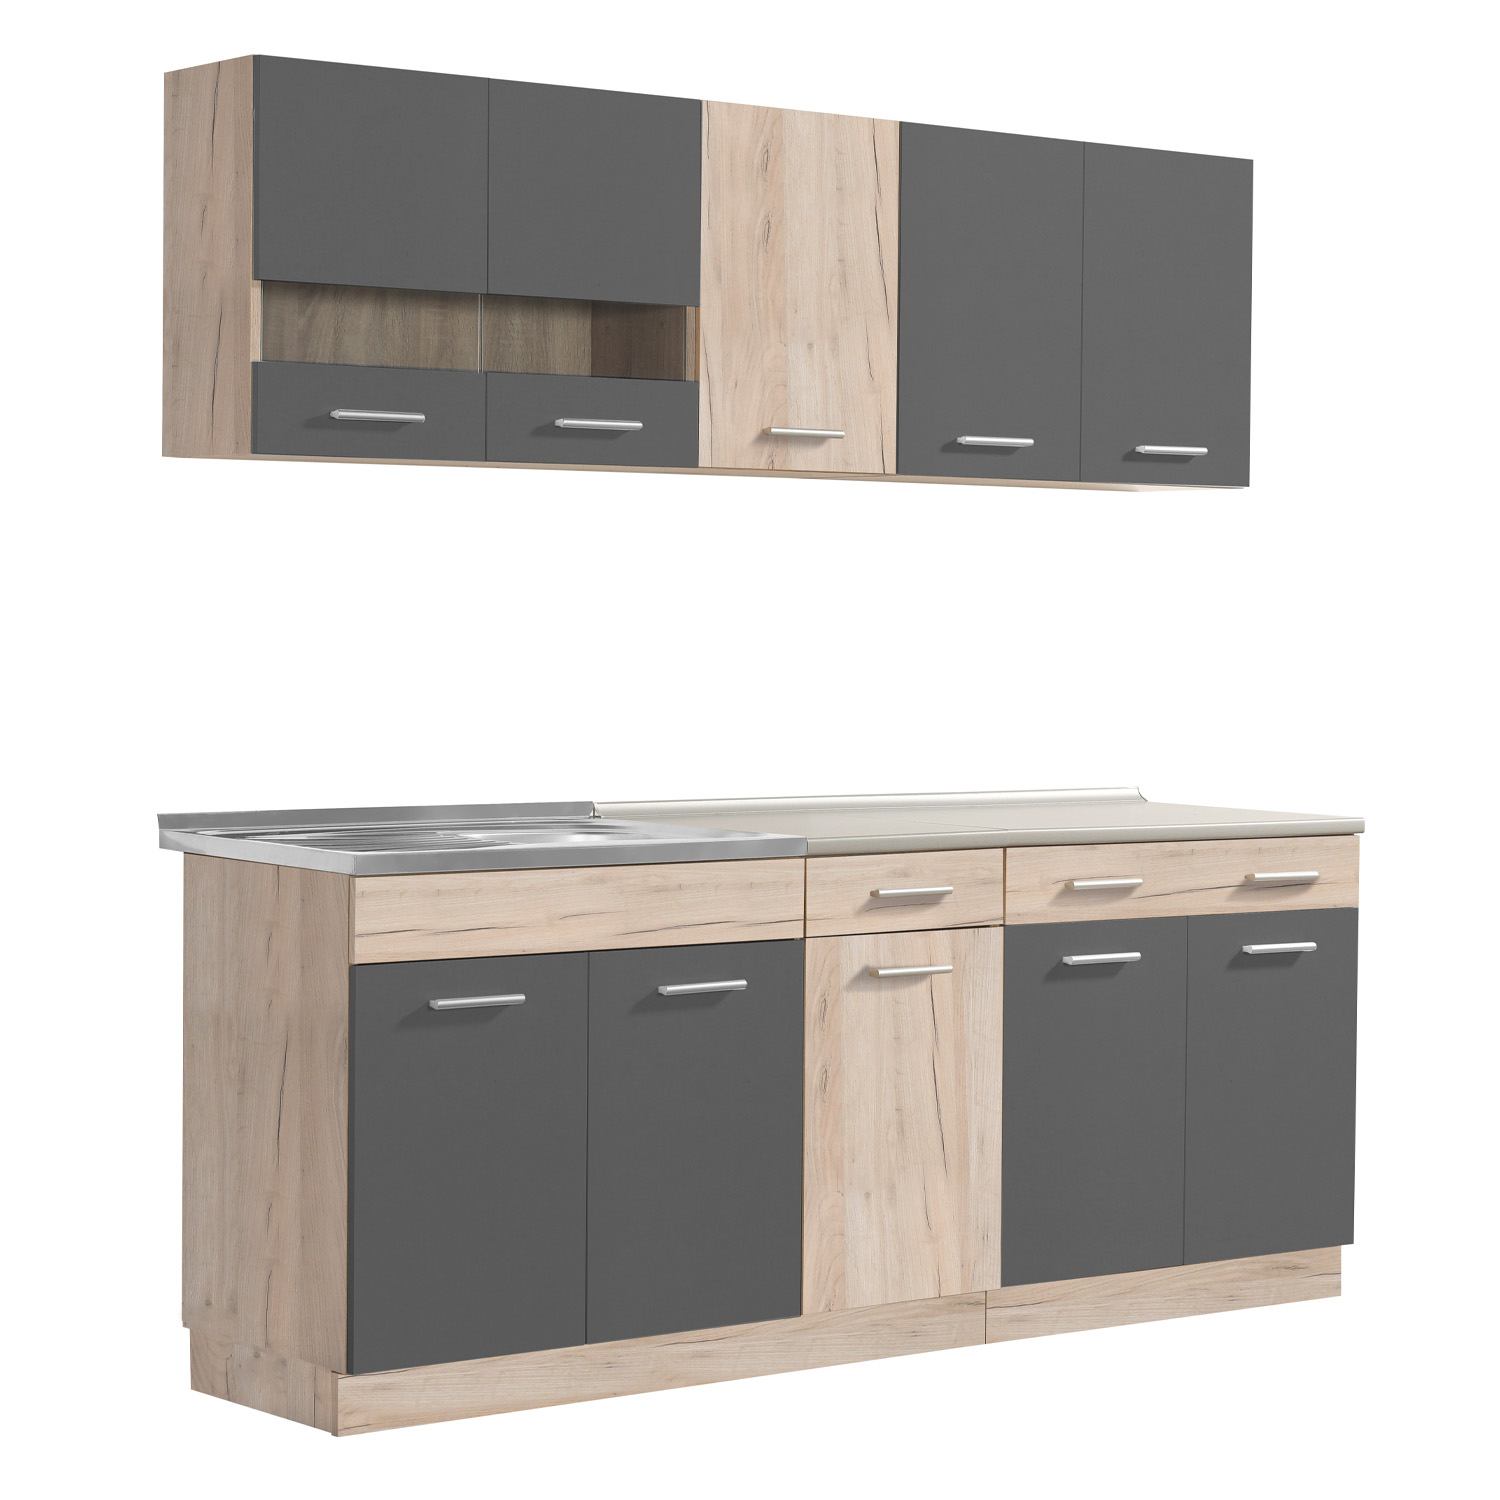 Modern Kitchen Grey Wood Kitchen Island Kitchen Cabinets Kitchen Units 200 cm Kitchen Cupboards